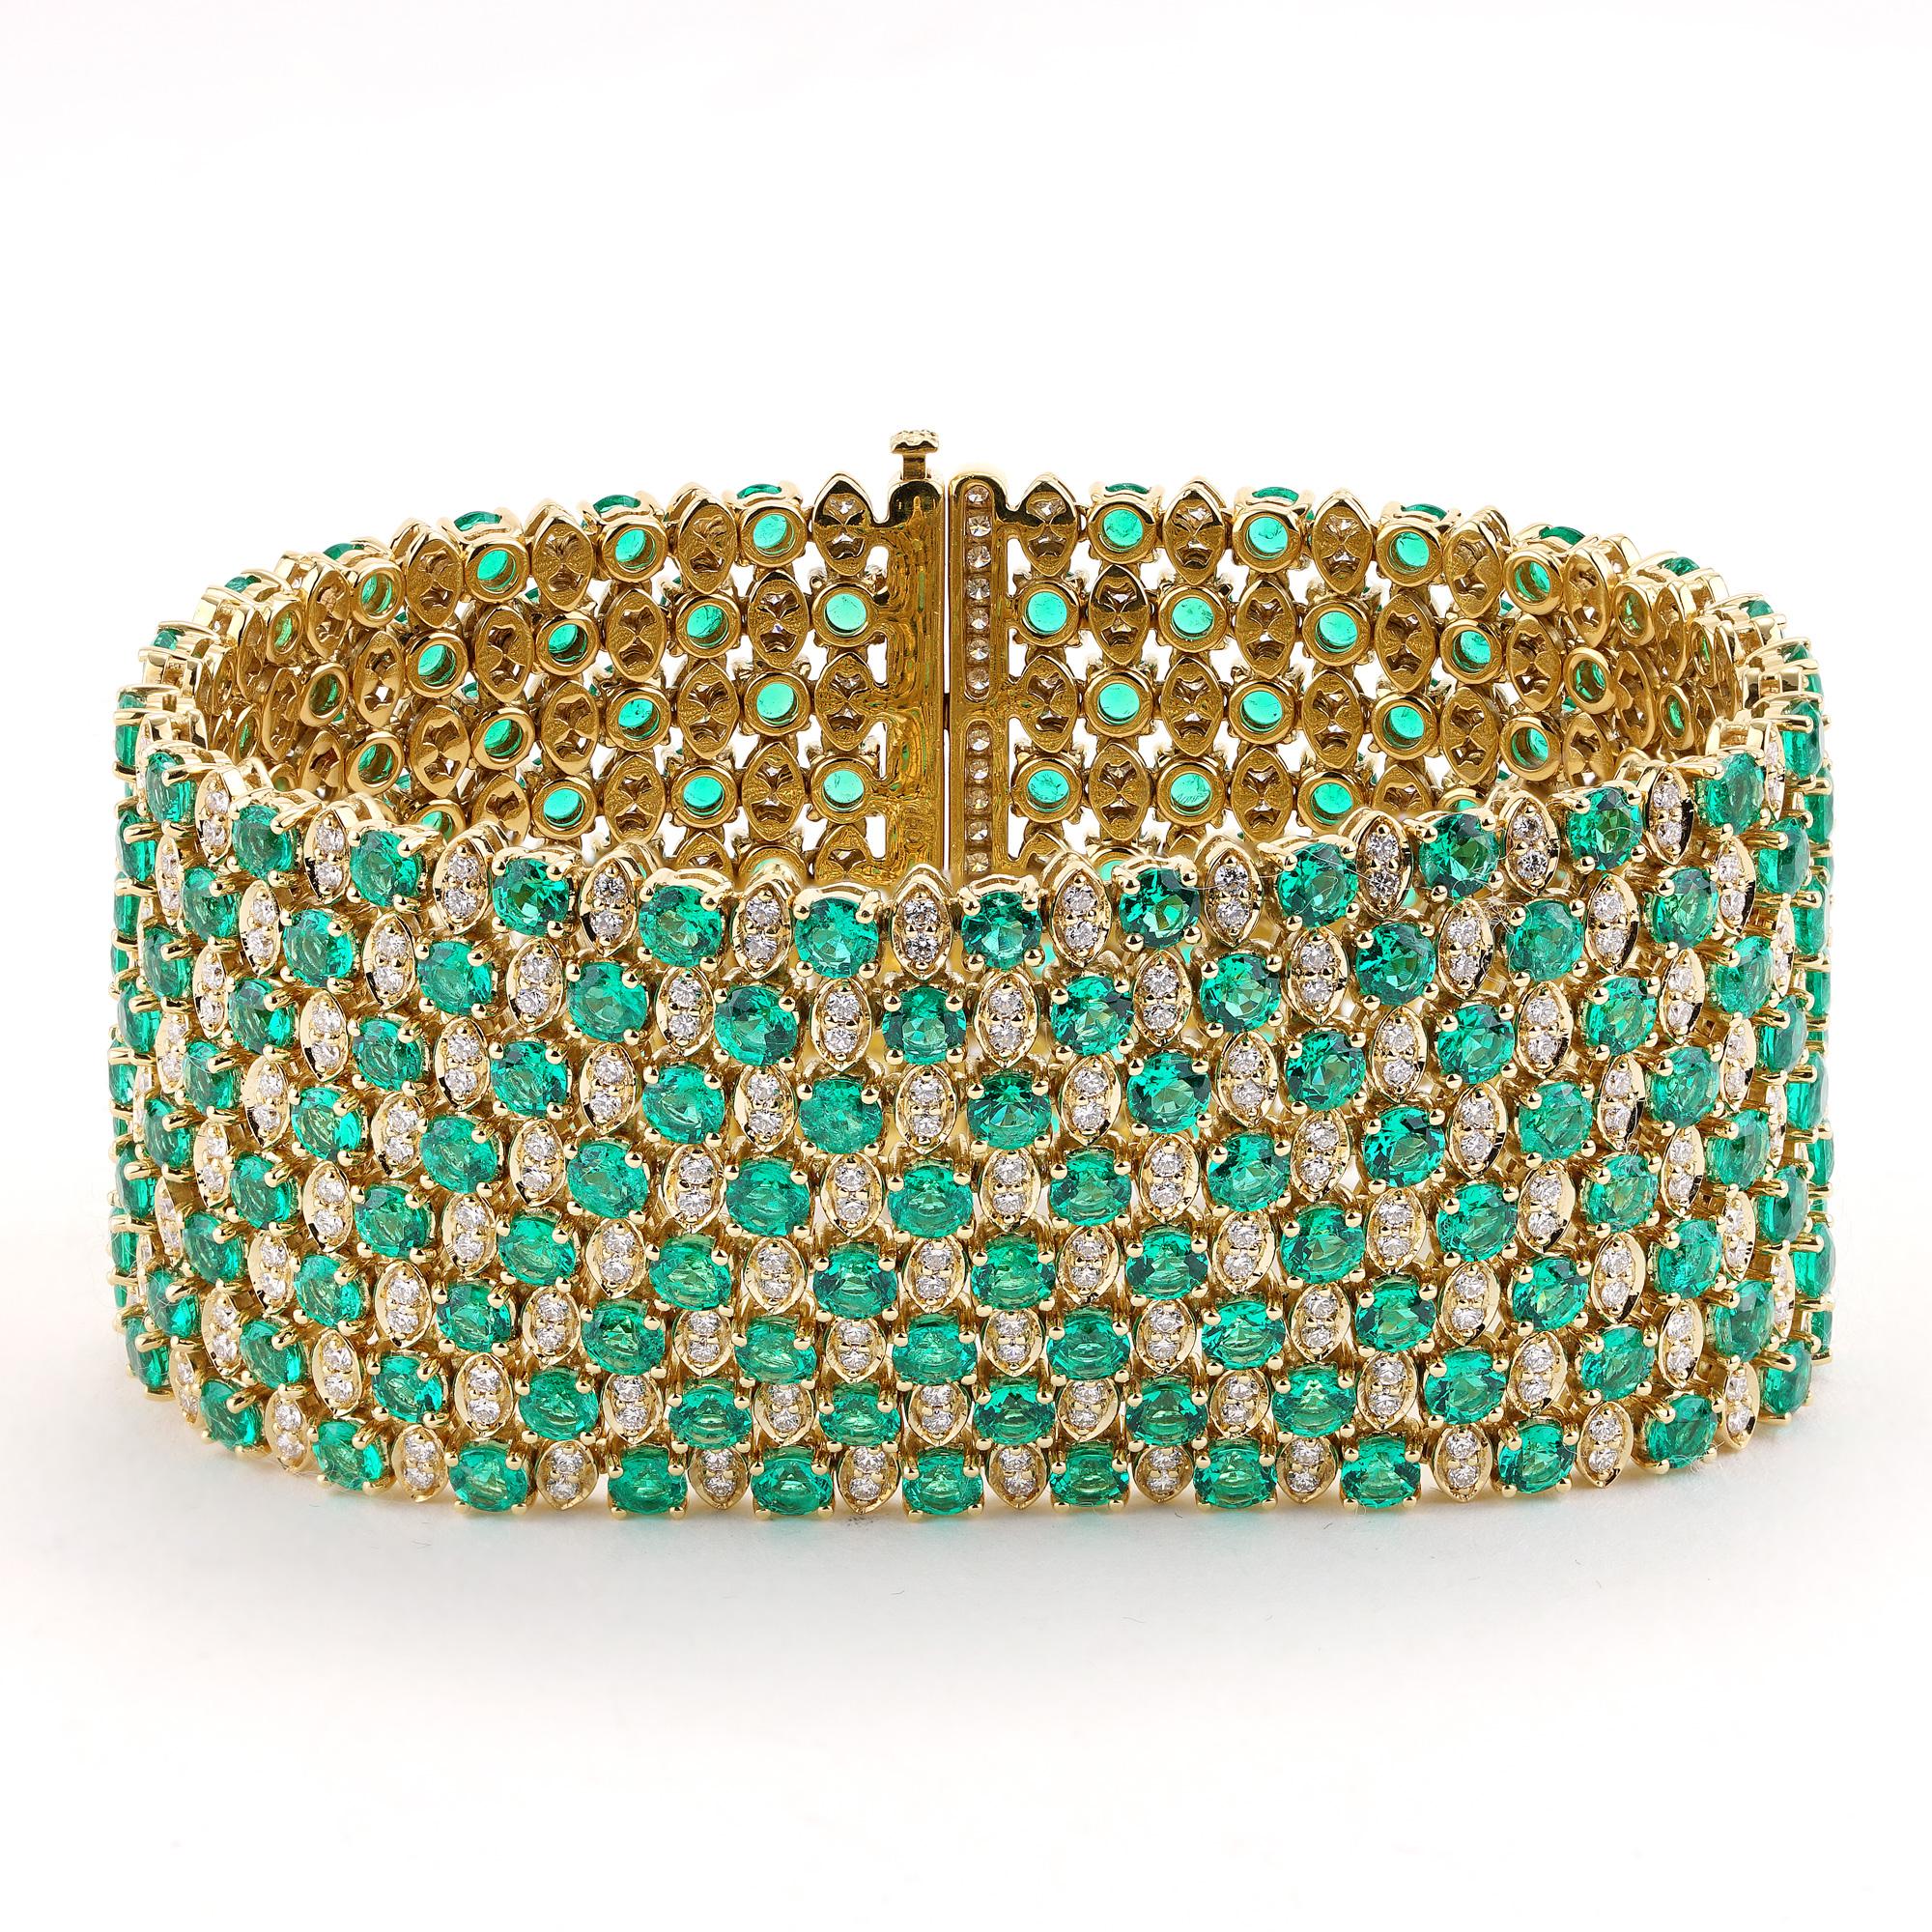 Rehaussez votre style avec ce bracelet exquis mettant en valeur 27,33 carats d'émeraudes vertes de Colombie et 5,07 carats de diamants éblouissants de couleur G et de pureté VS. Conçu pour les moments spéciaux du tapis rouge, ce bracelet mesure 7